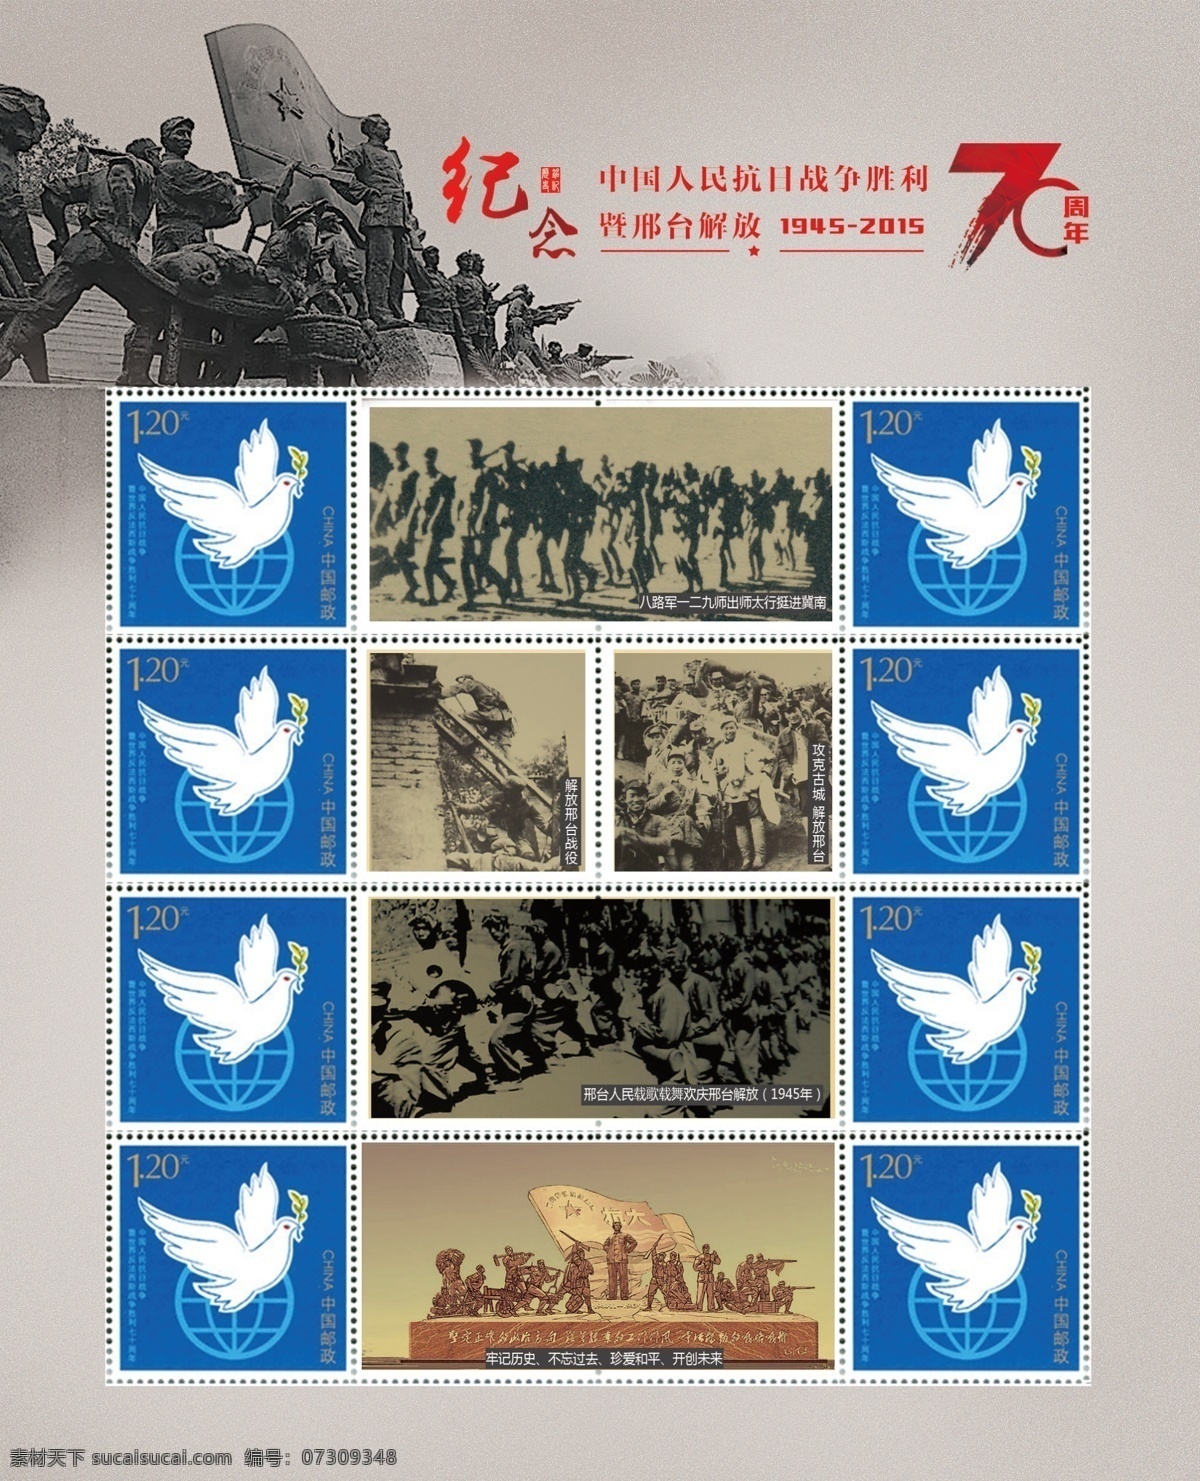 纪念 抗日战争 周年 个性化 邮票 雕塑 抗日 和平鸽 抗日照片 历史 灰色